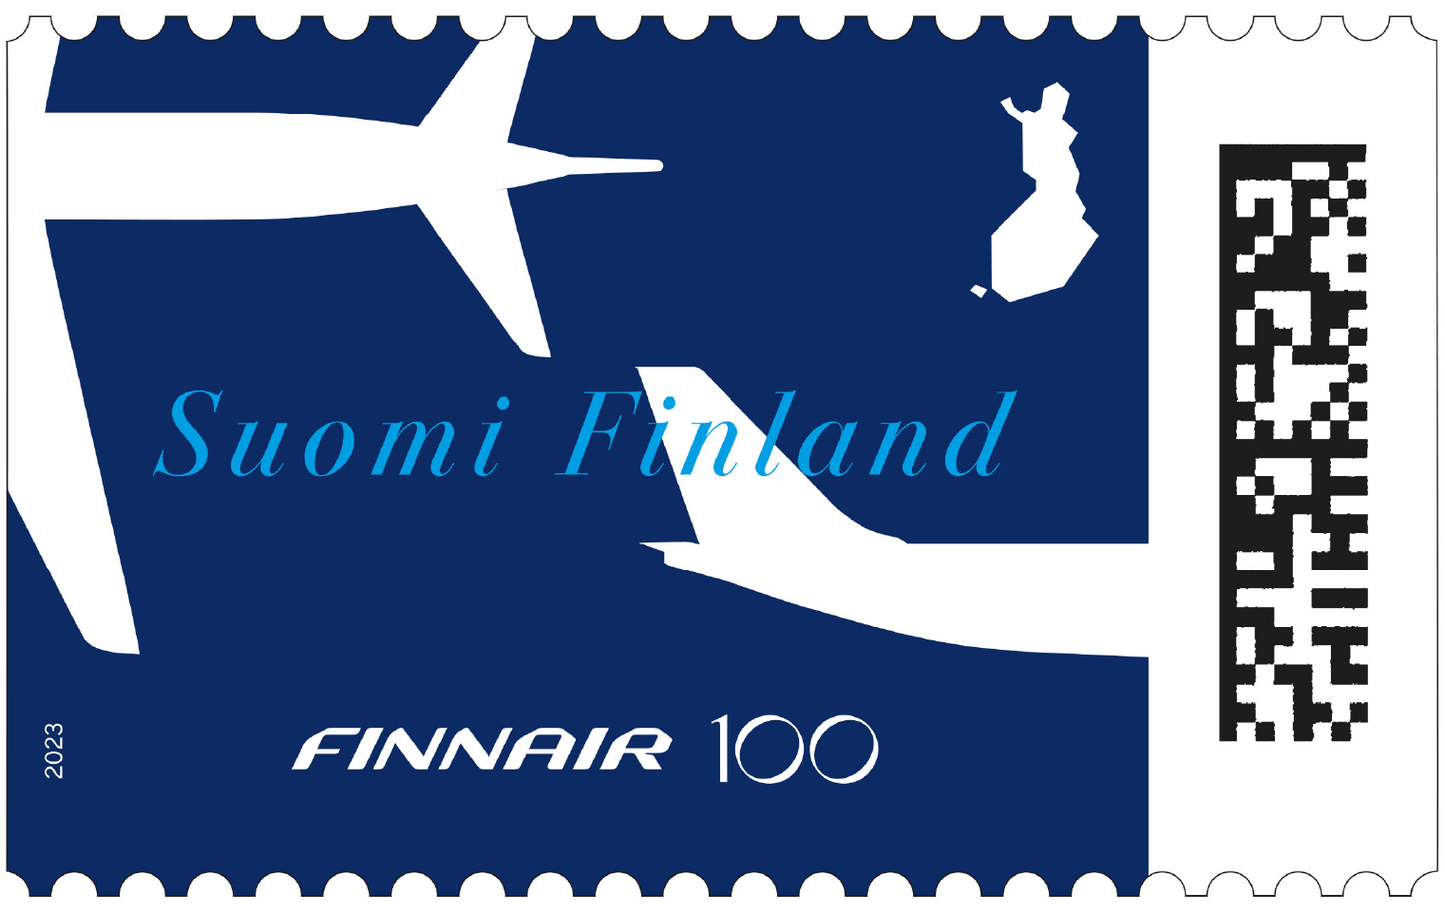 Finnair 100 years -cancelled